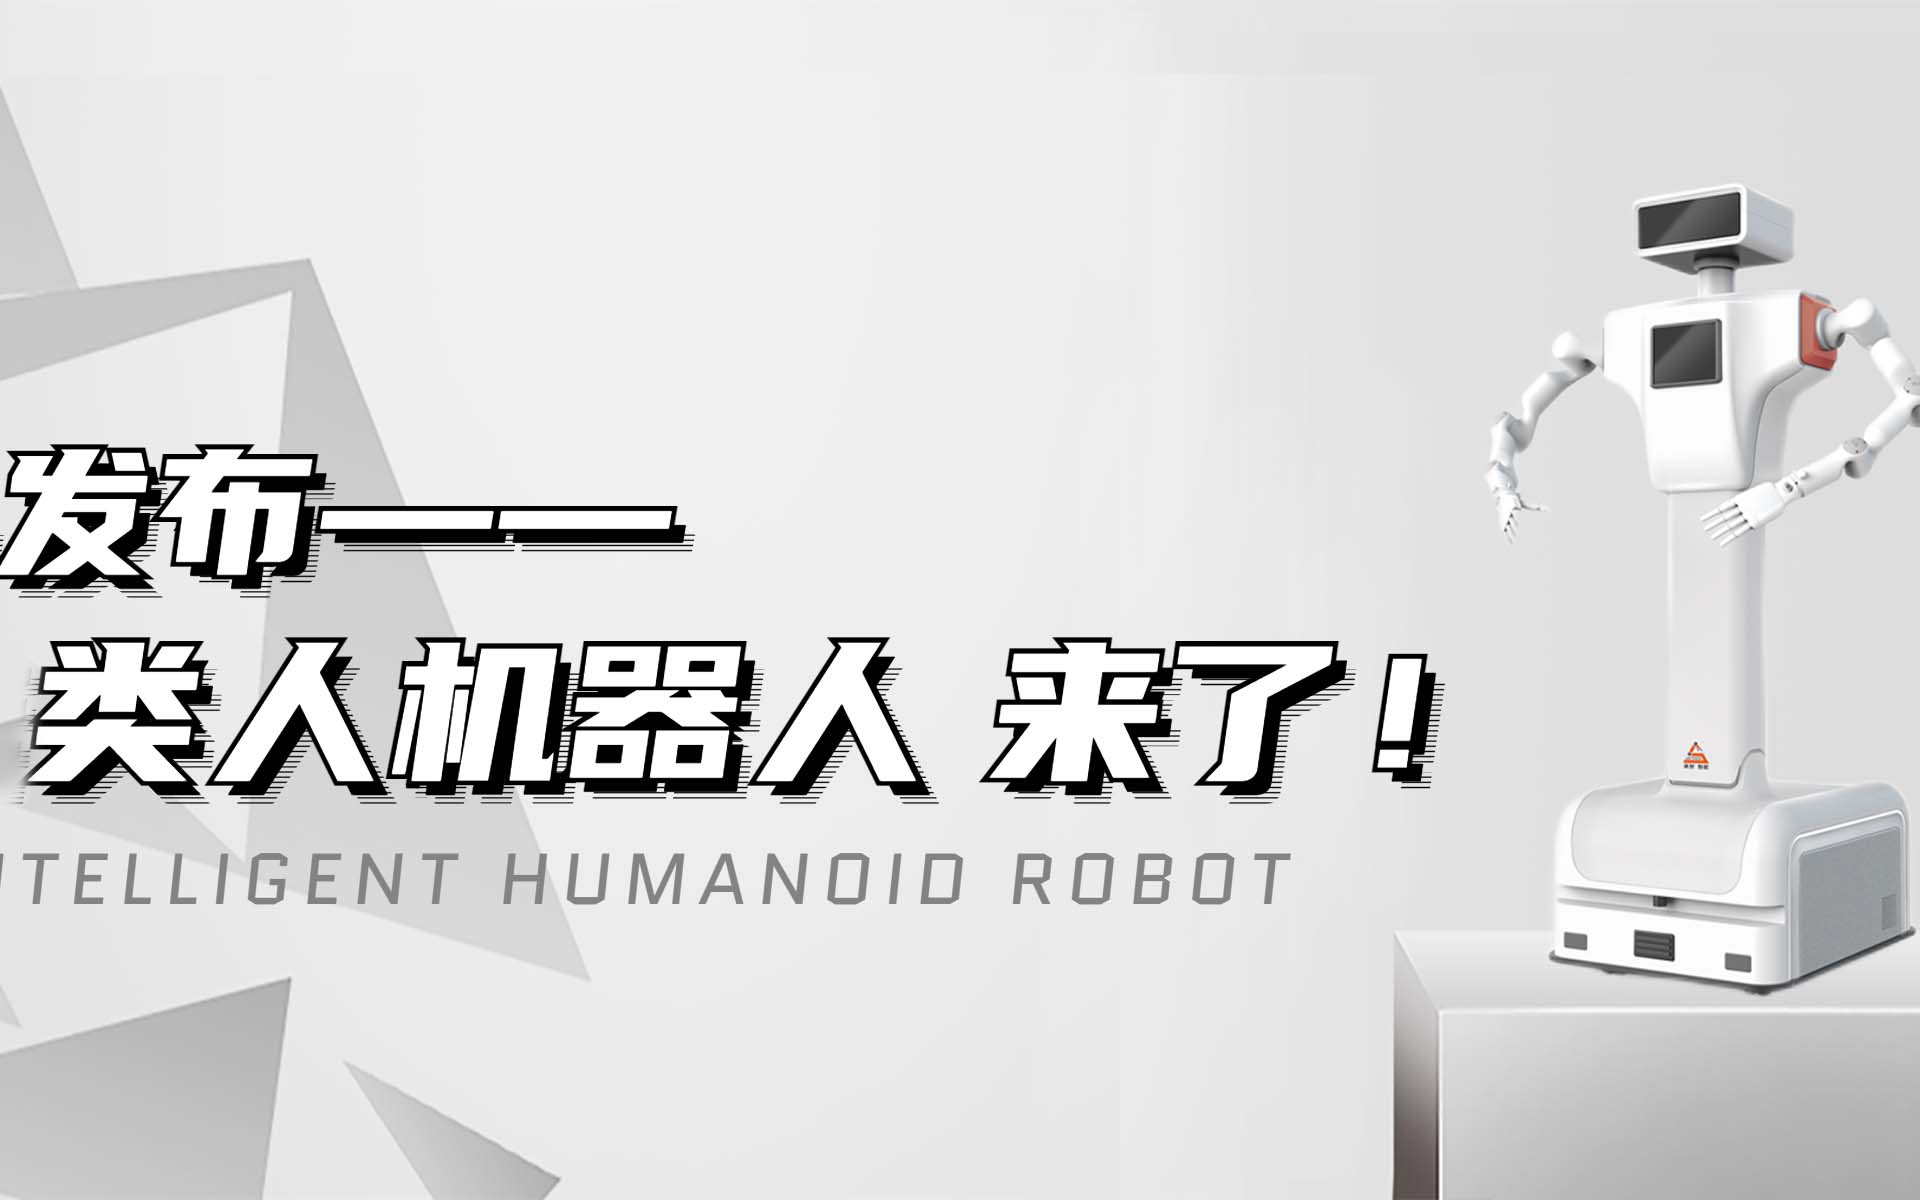 【新品发布】188bet体育登录体育注册类人机器人来啦！